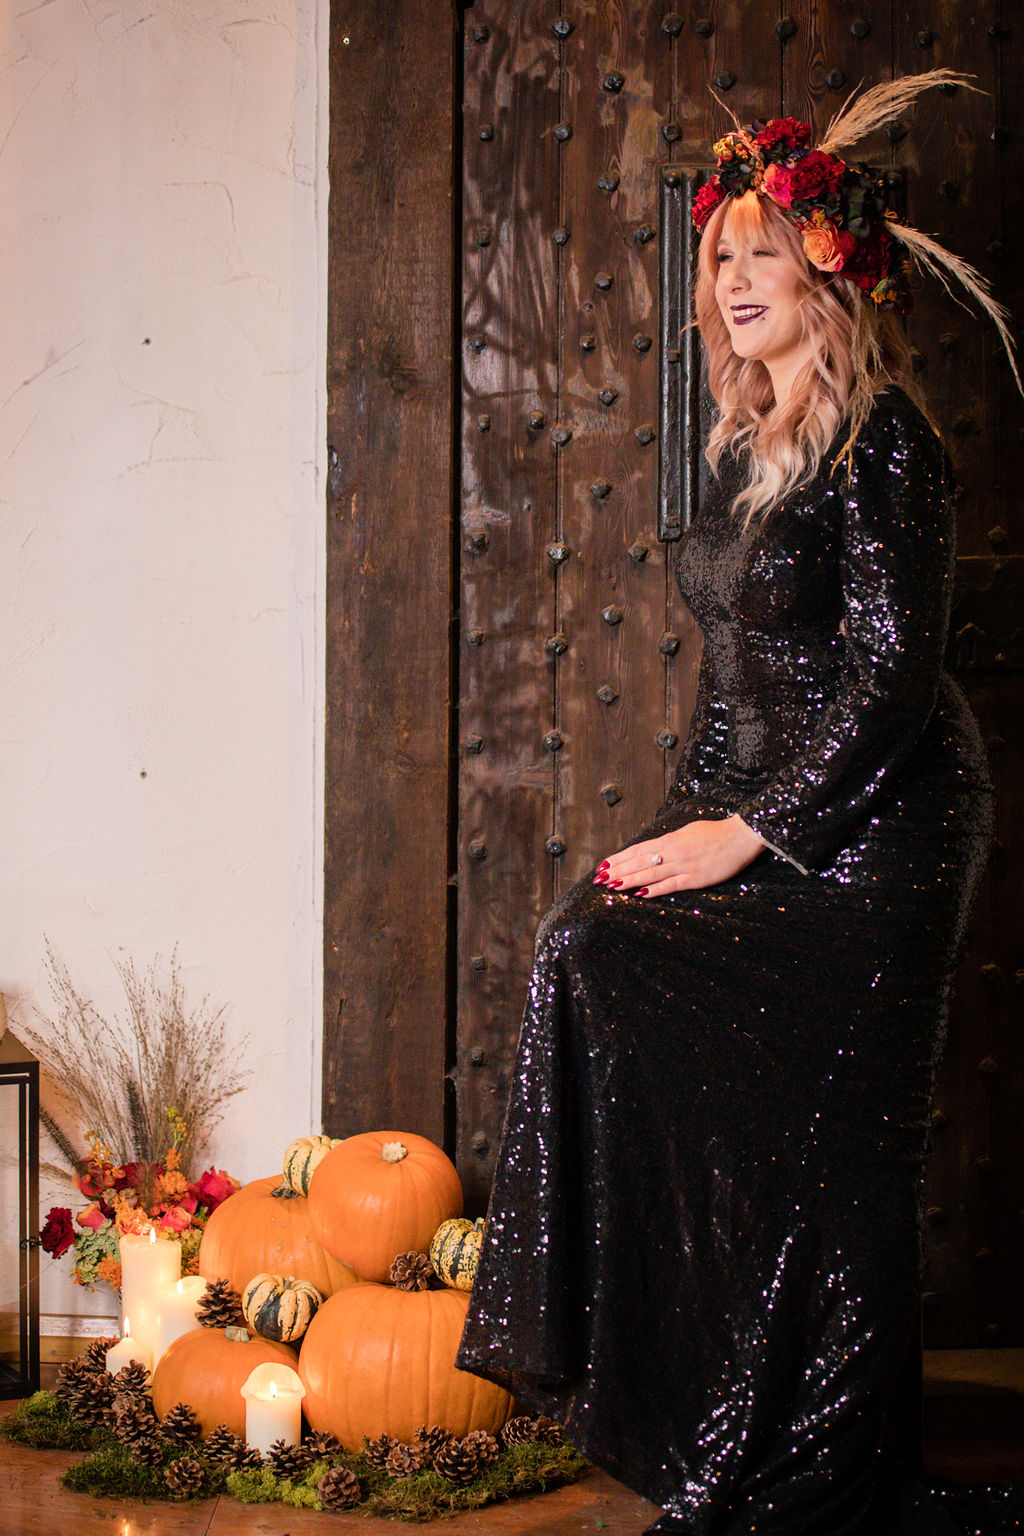 dark autumn wedding - halloween wedding - bride with pumpkins - black wedding dress - autumn bride - alternative wedding dress